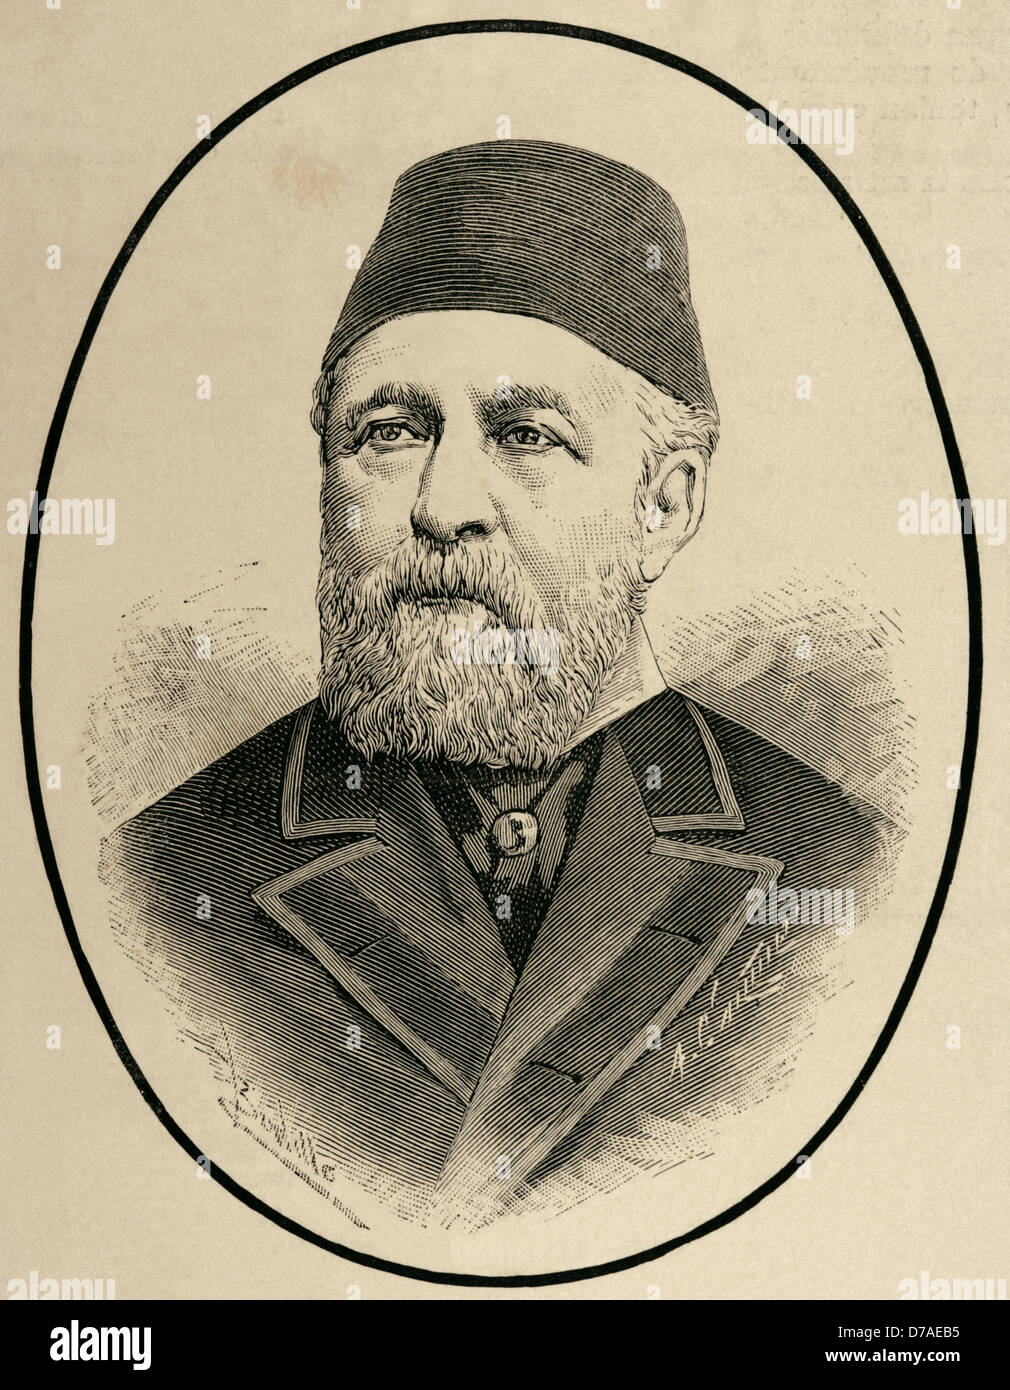 Hussein Sermed Affendi (1830-1886). Türkischer Diplomat. Kupferstich von Arturo Carretero y Sanchez (1852-1903). Stockfoto